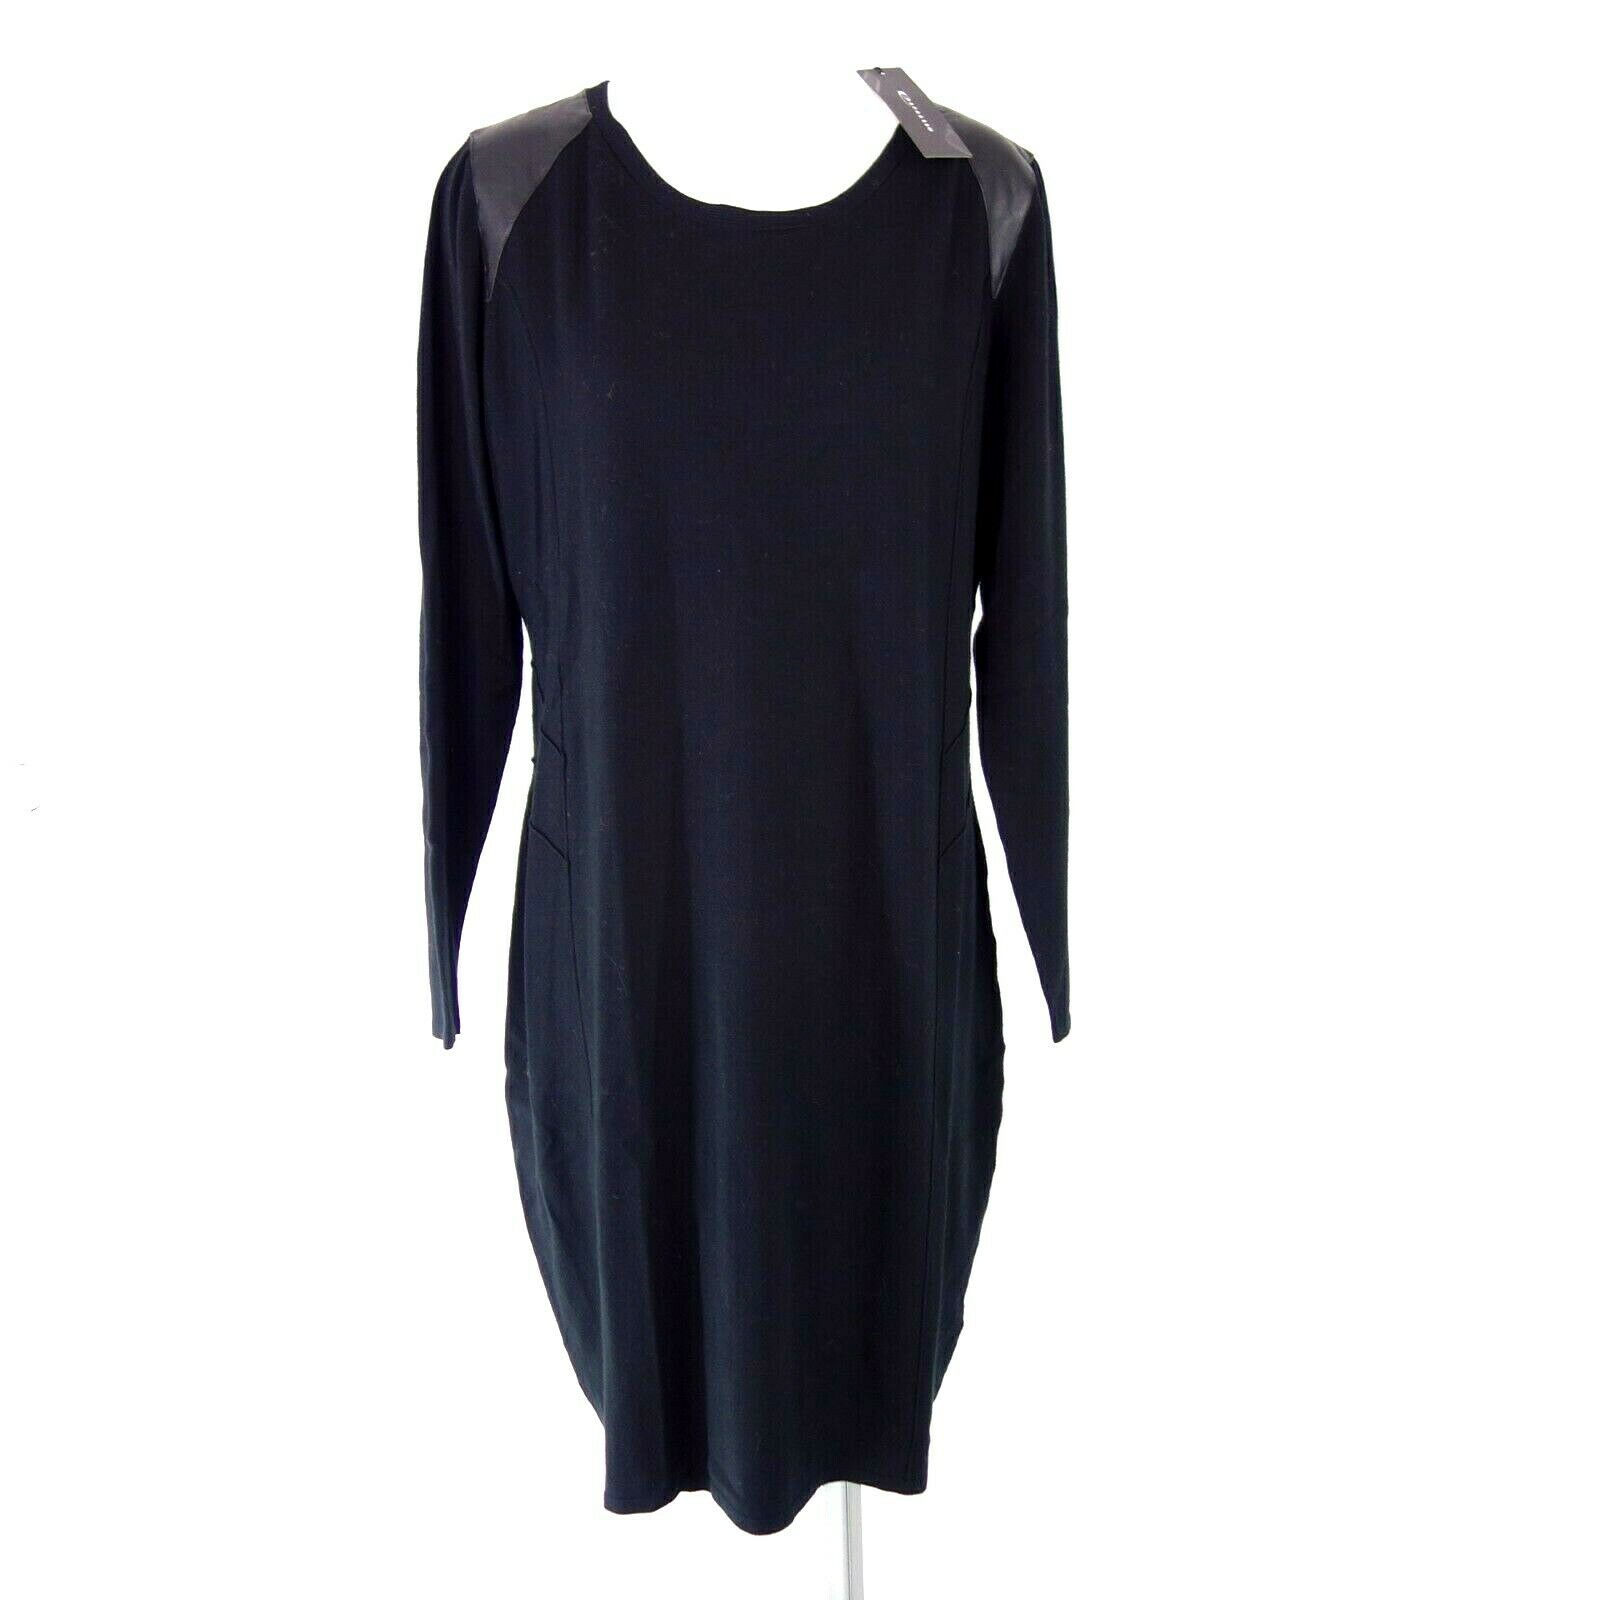 Expresso Damen Kleid Jerseykleid Modell Matrix Größe XL 42 Schwarz Neu